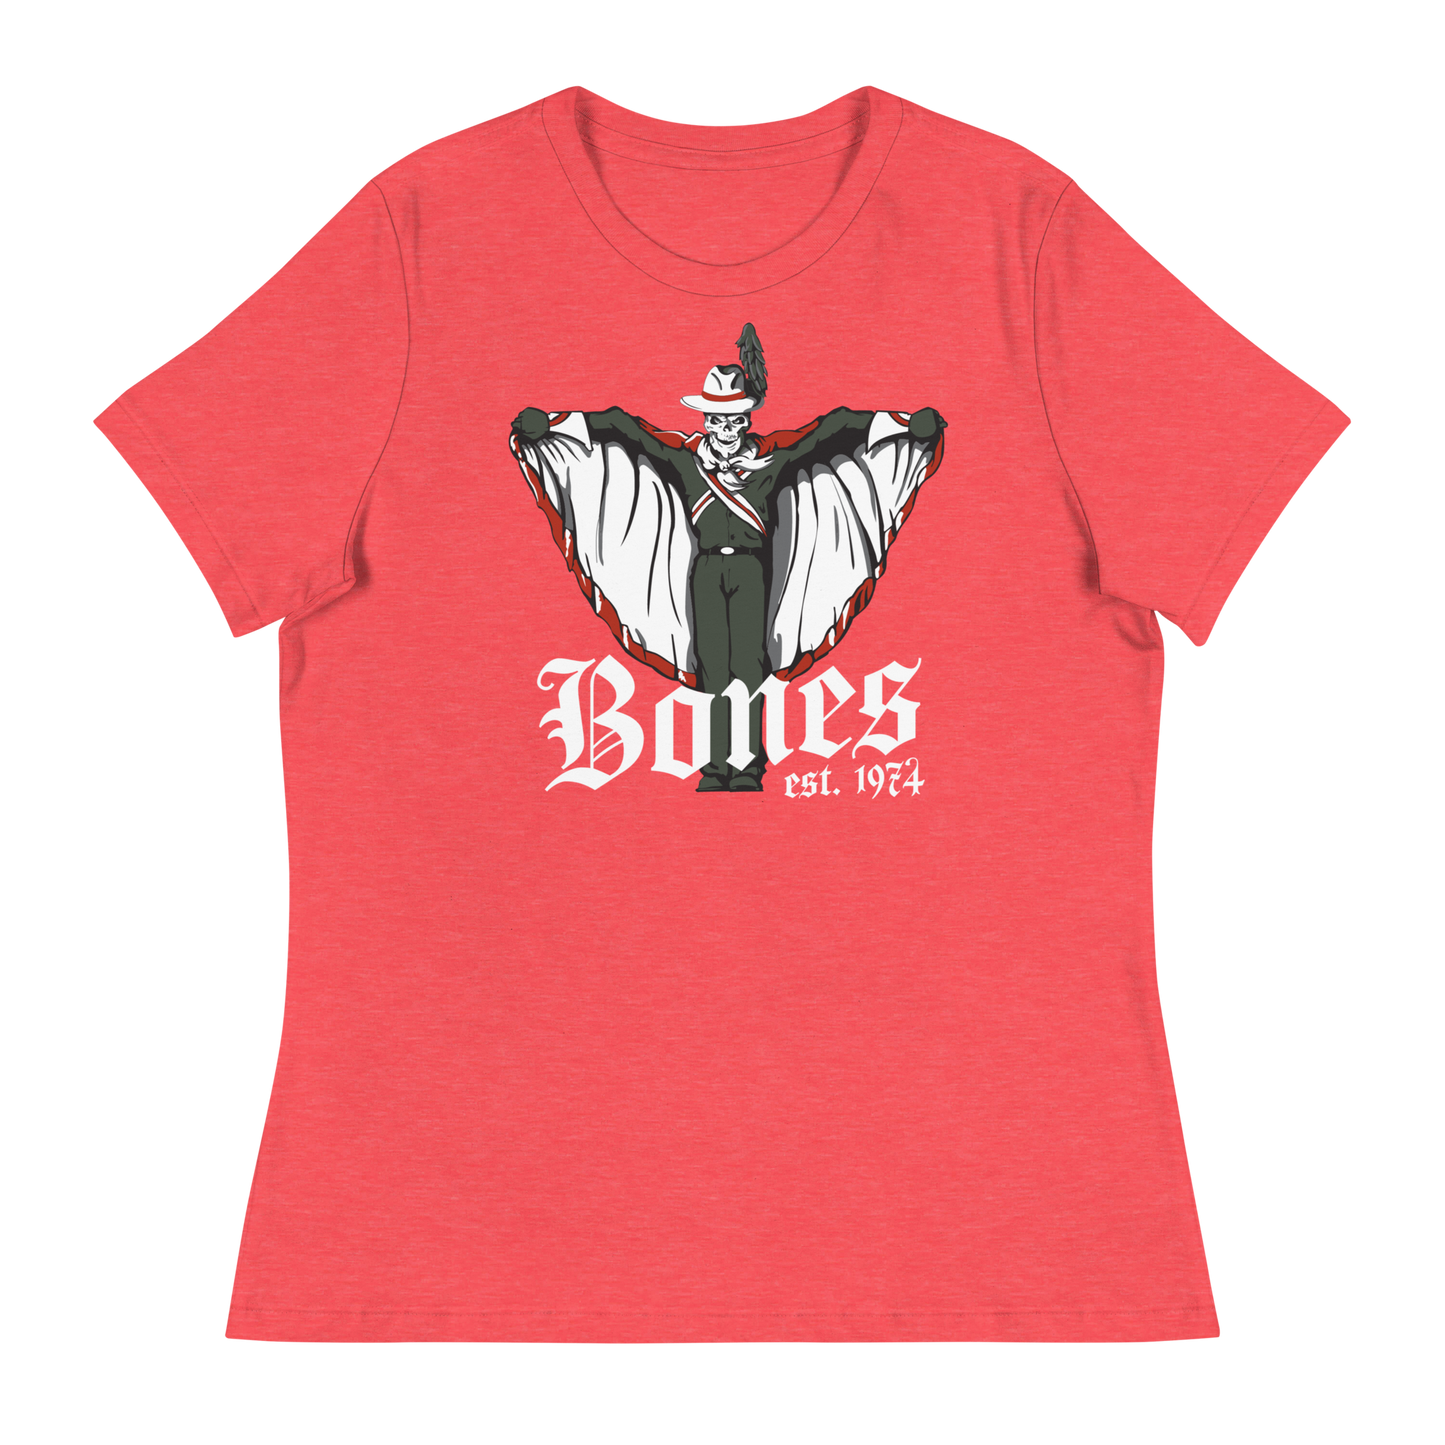 Bones Women's Relaxed T-Shirt